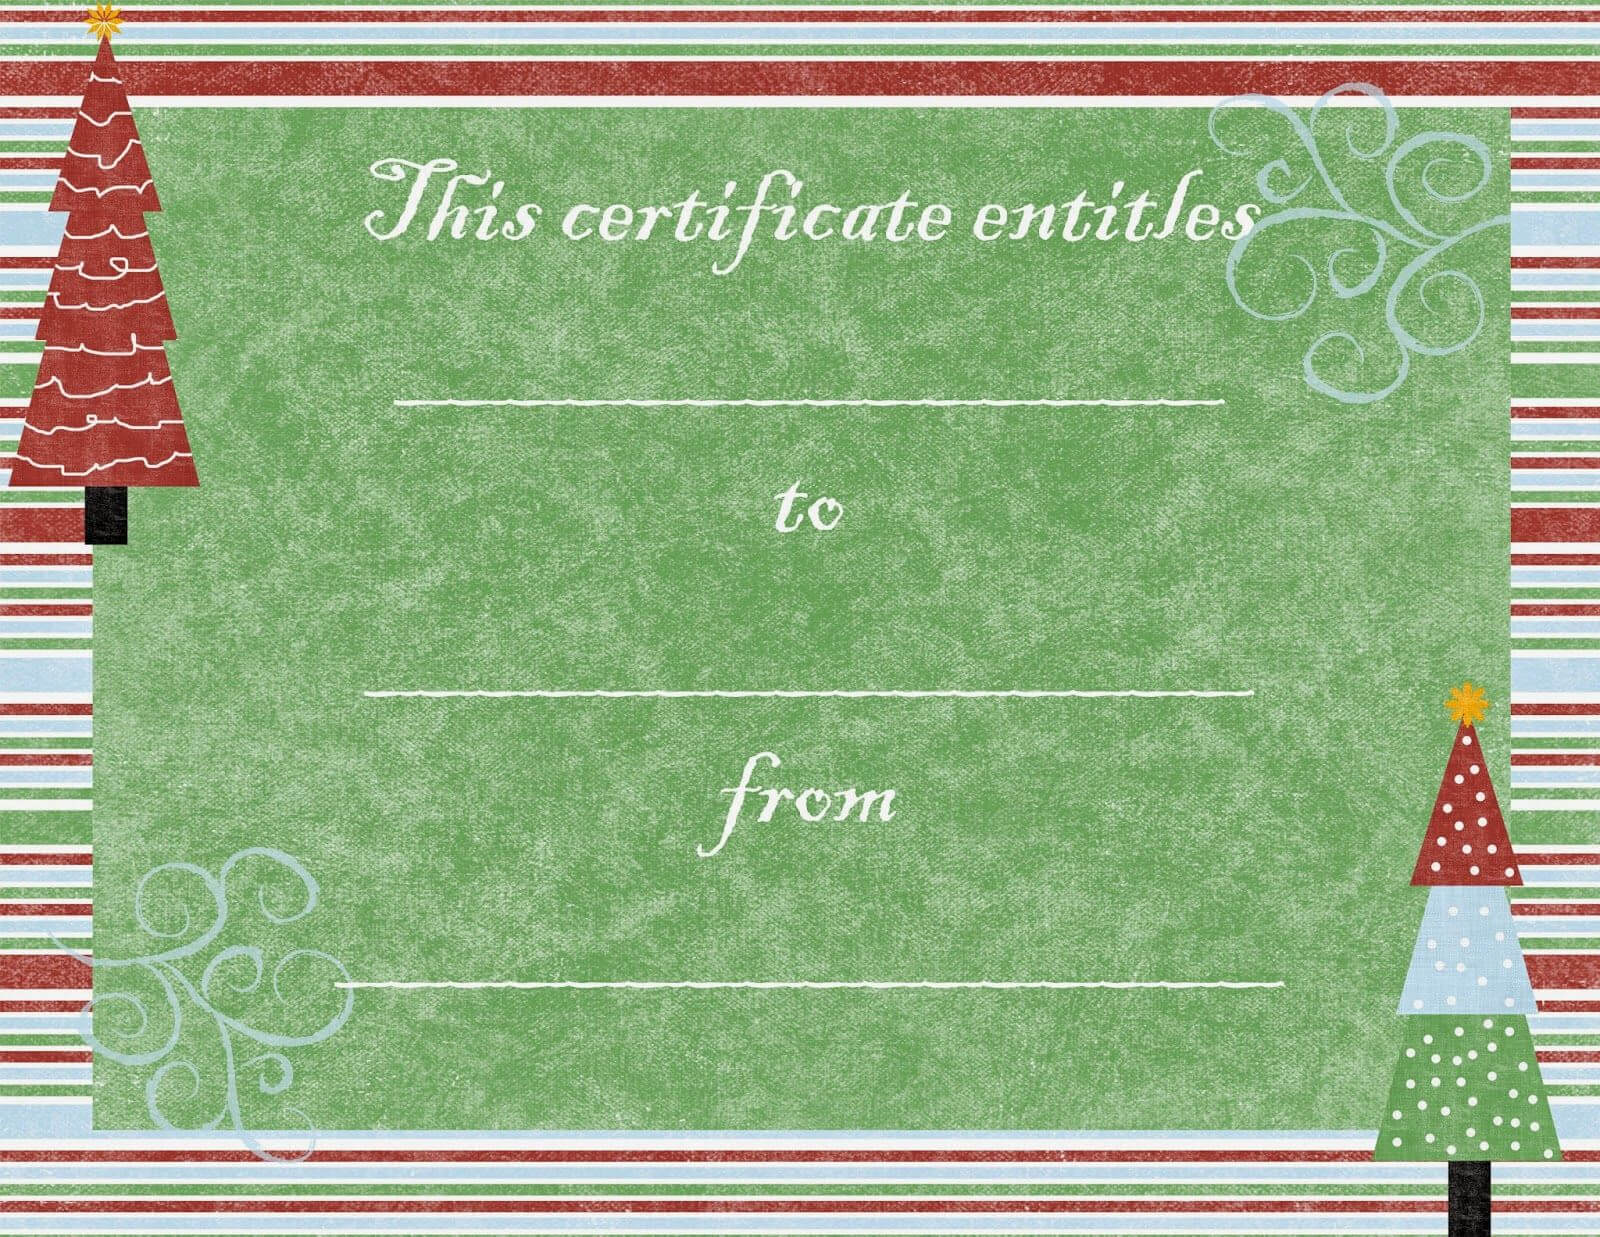 Pinjayni Kingsford On Christmas | Gift Certificate Throughout Free Christmas Gift Certificate Templates